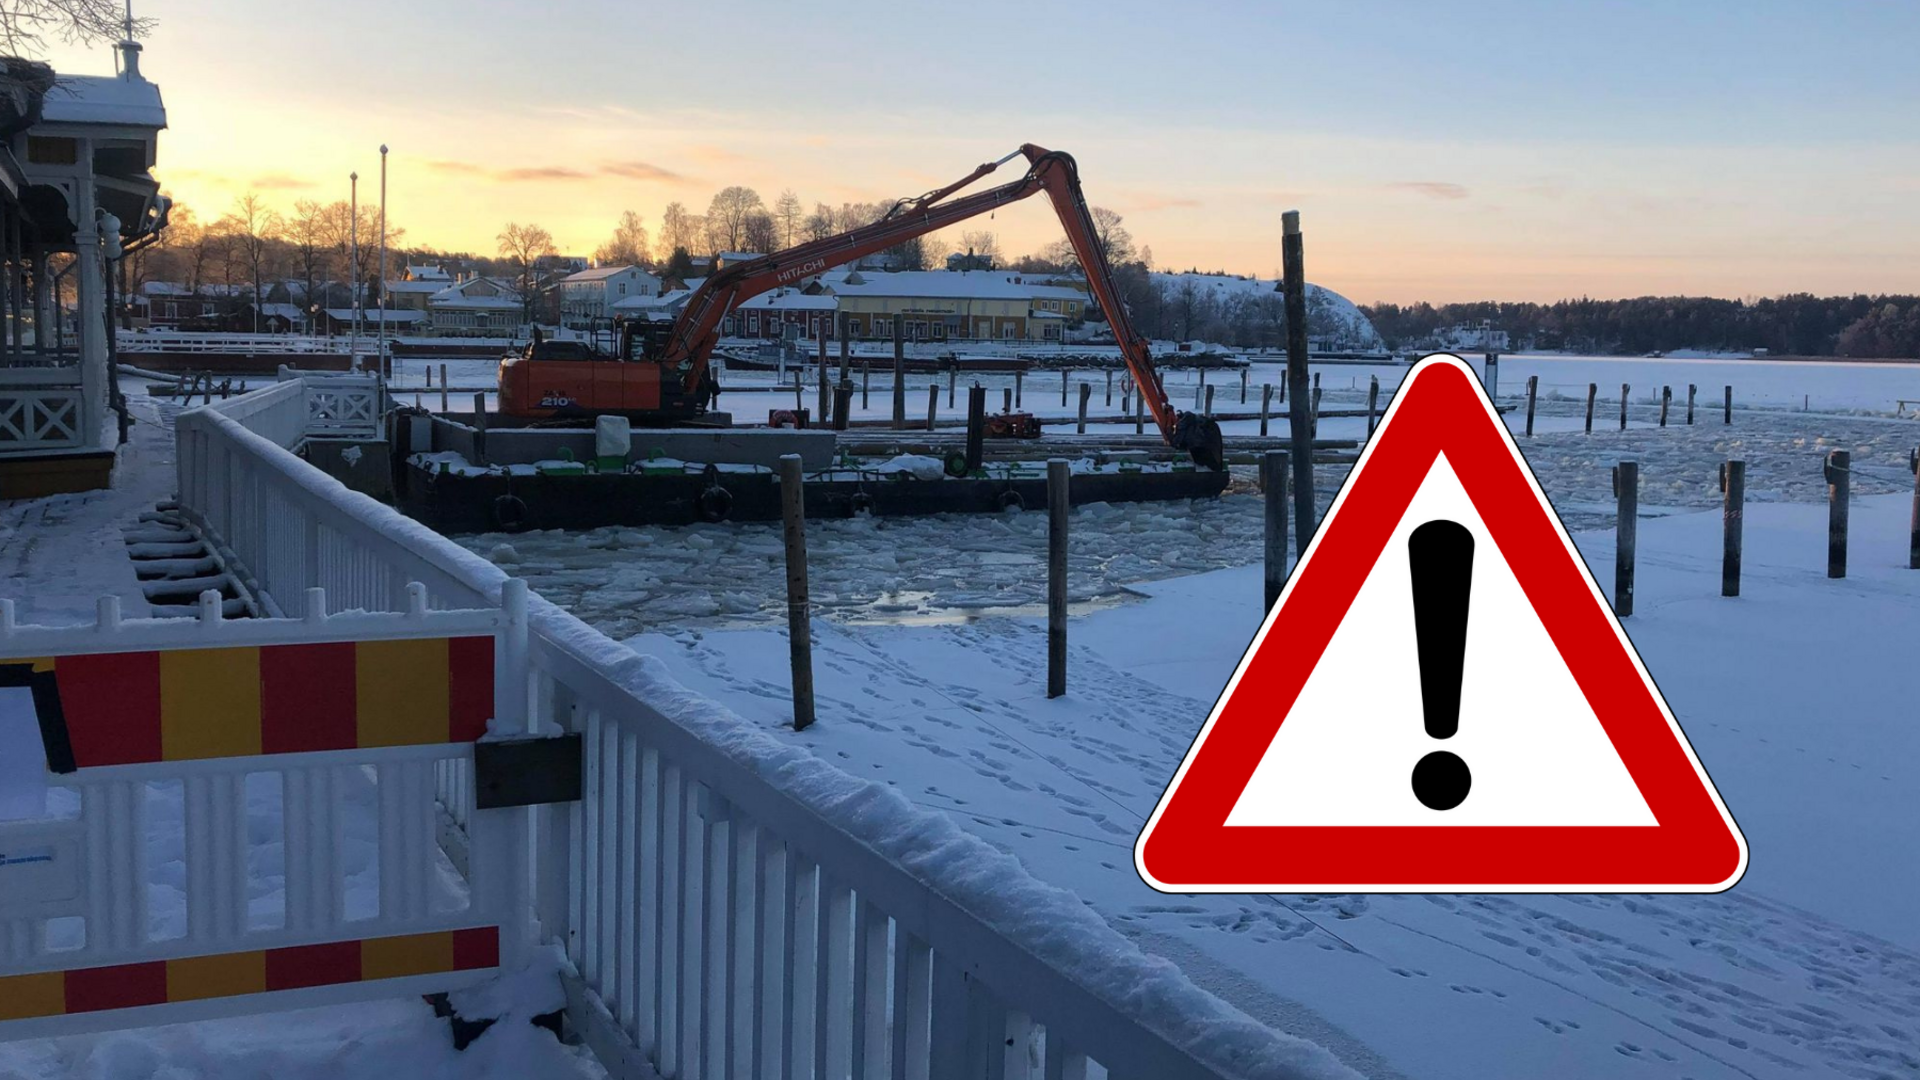 Aurinko nousee Vanhankaupungin rannassa, jossa työmaalautta seisoo rikkoutuneen jään keskellä. Kuvaan lisätty varoitussymboli.